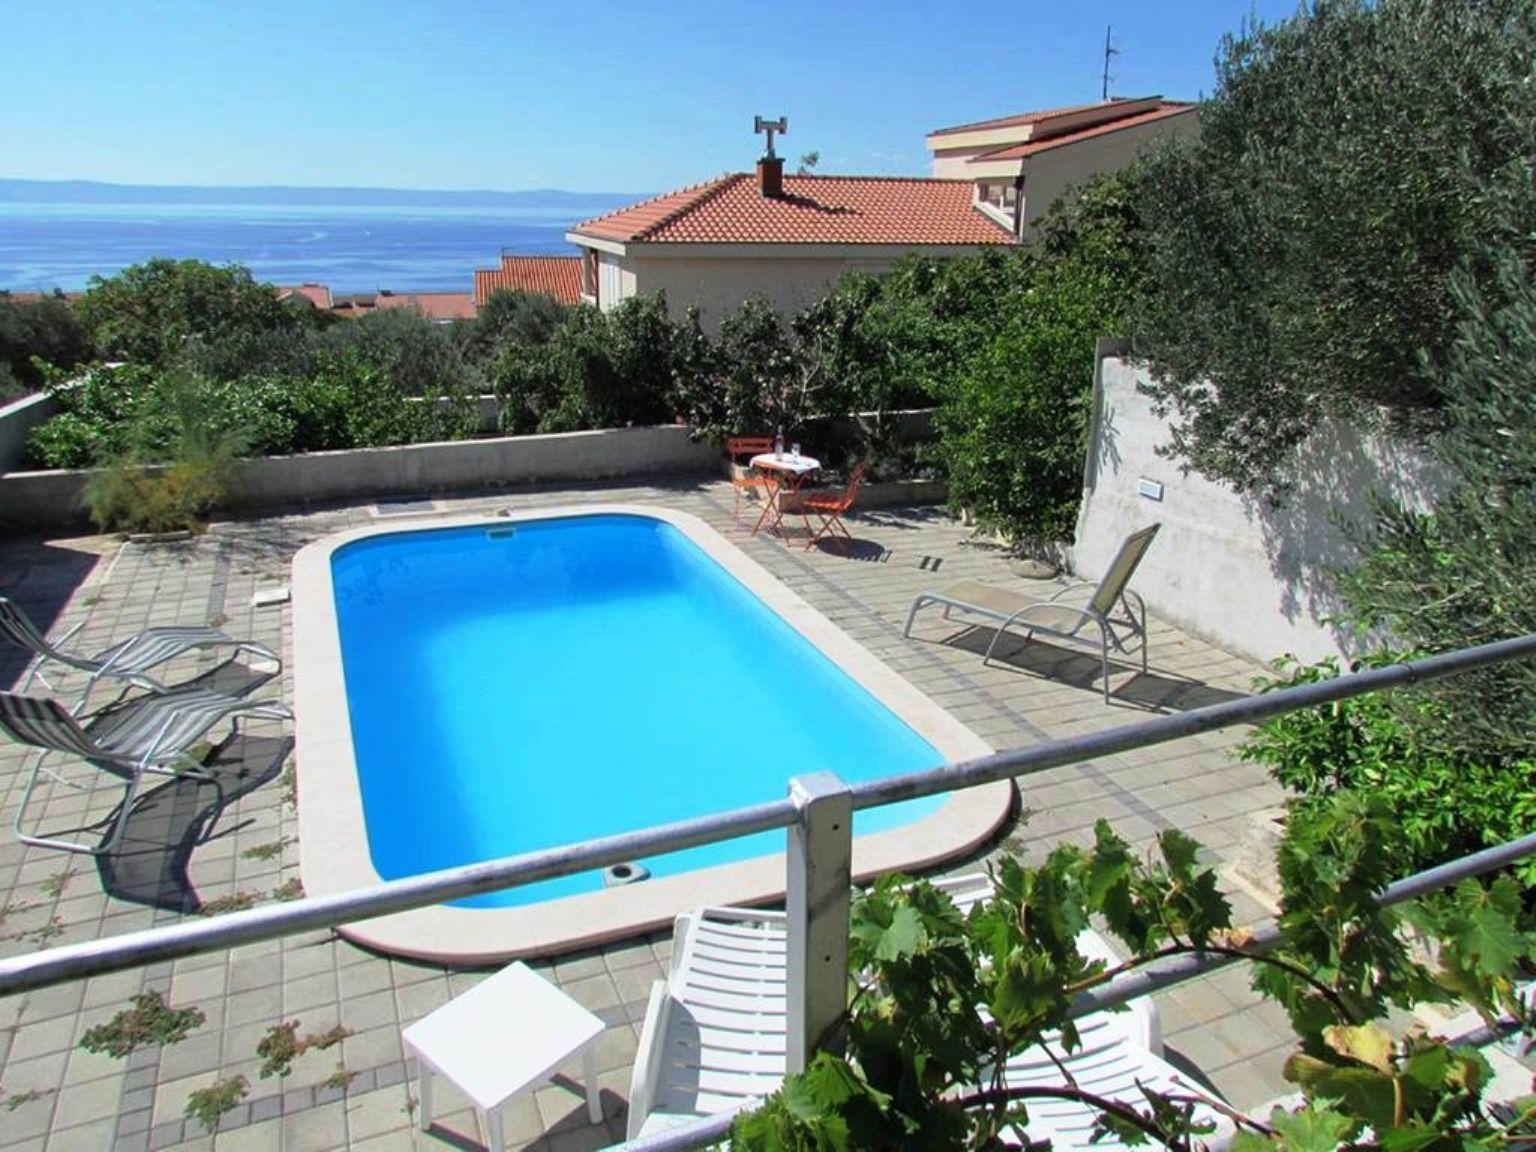 Moderne Ferienwohnung LINDA mit Pool und Meerblick Ferienhaus in Kroatien